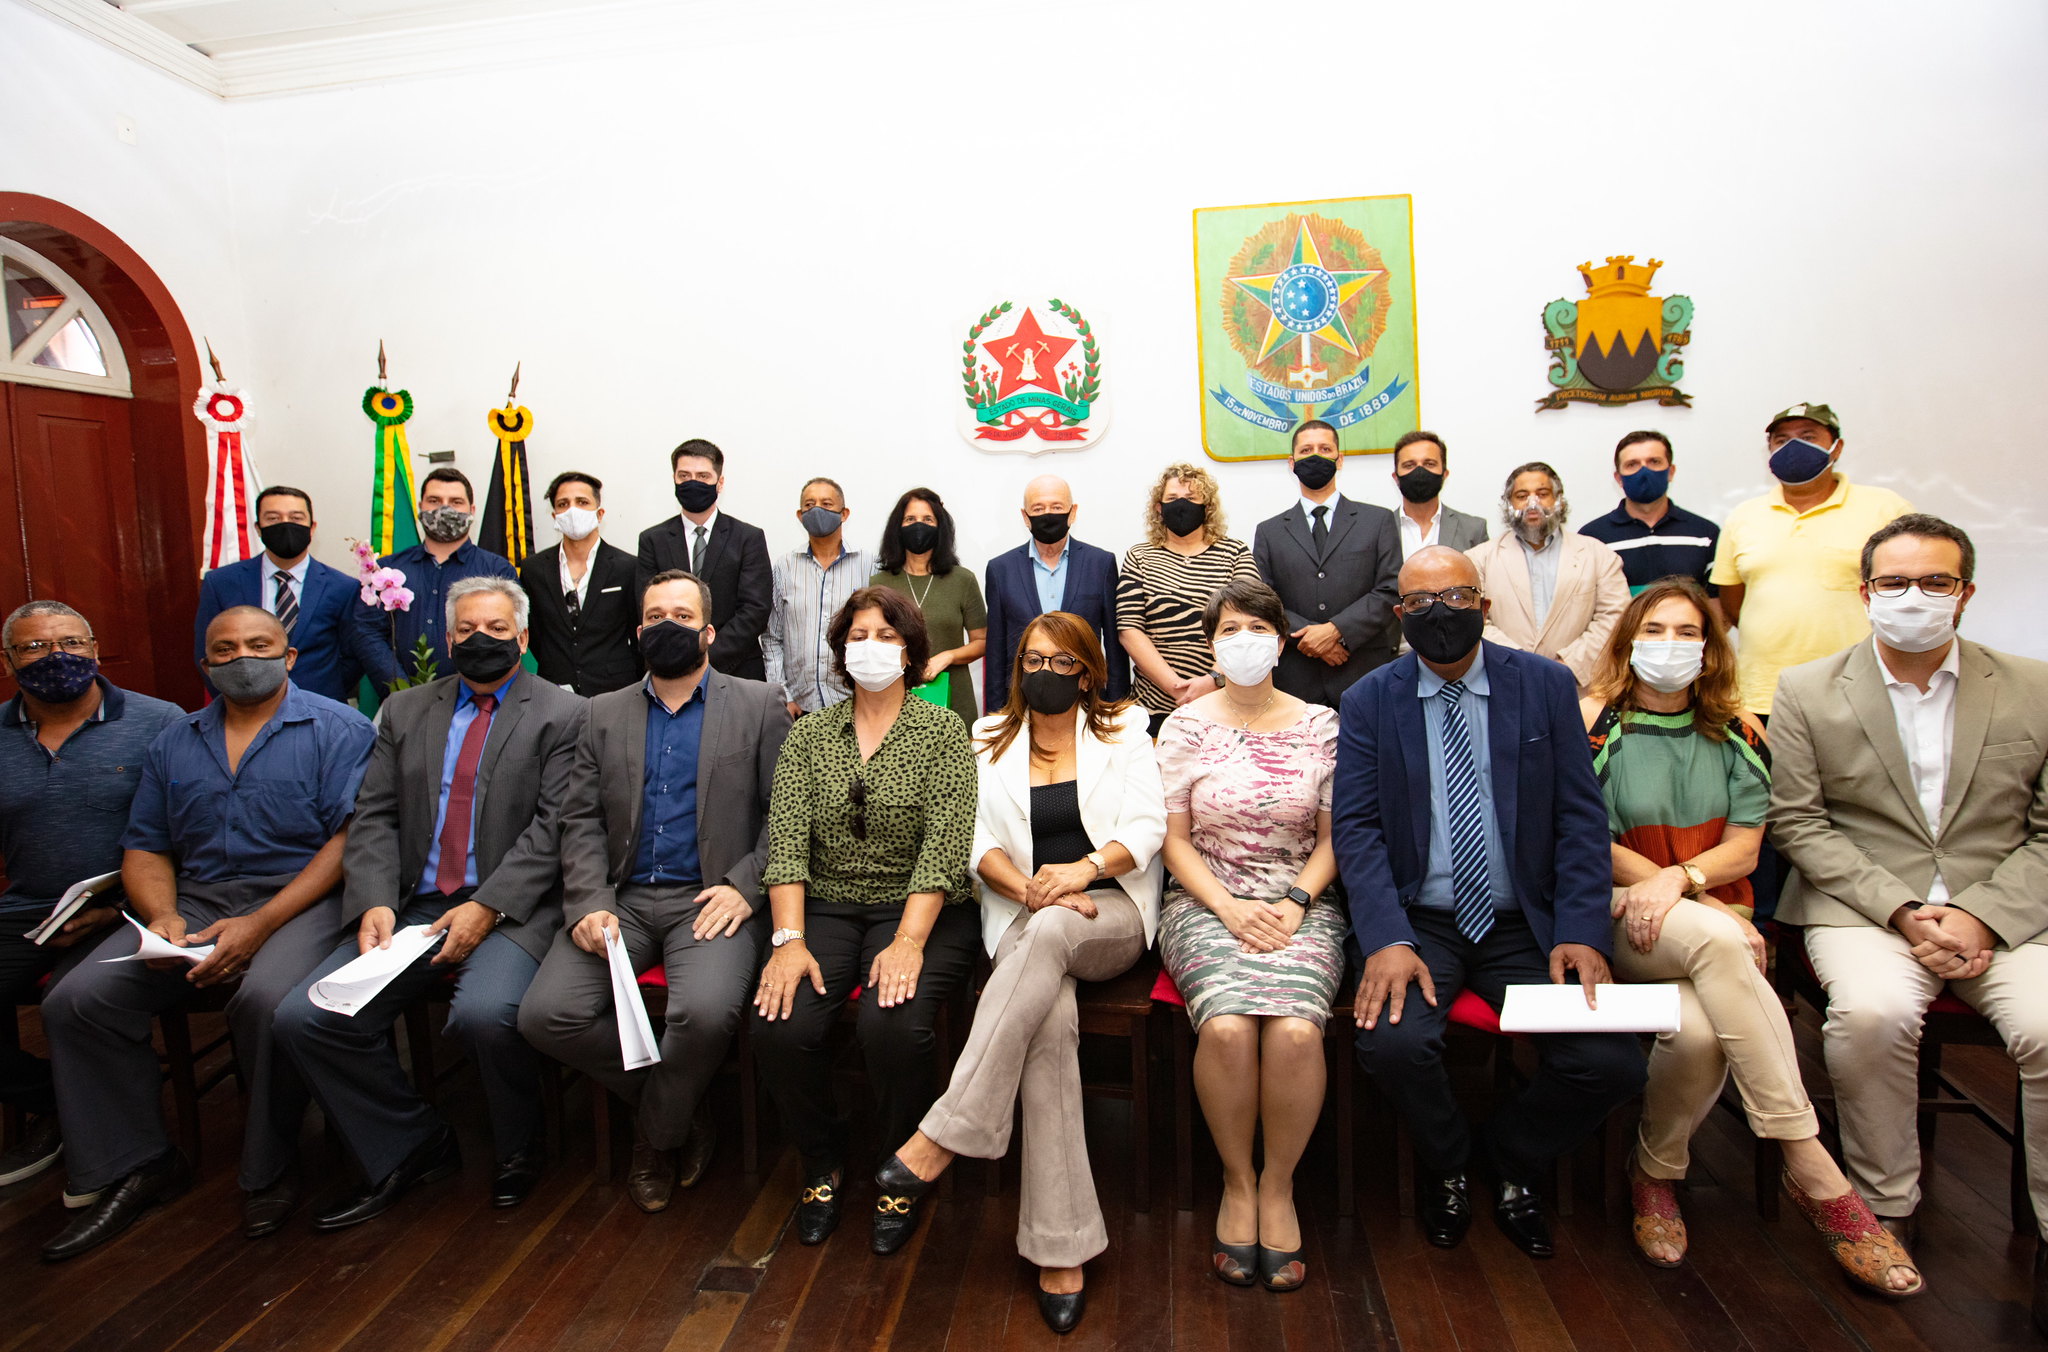 Artistas de Ouro Preto cobram prefeito pelo lançamento do edital do Fundo de Cultura